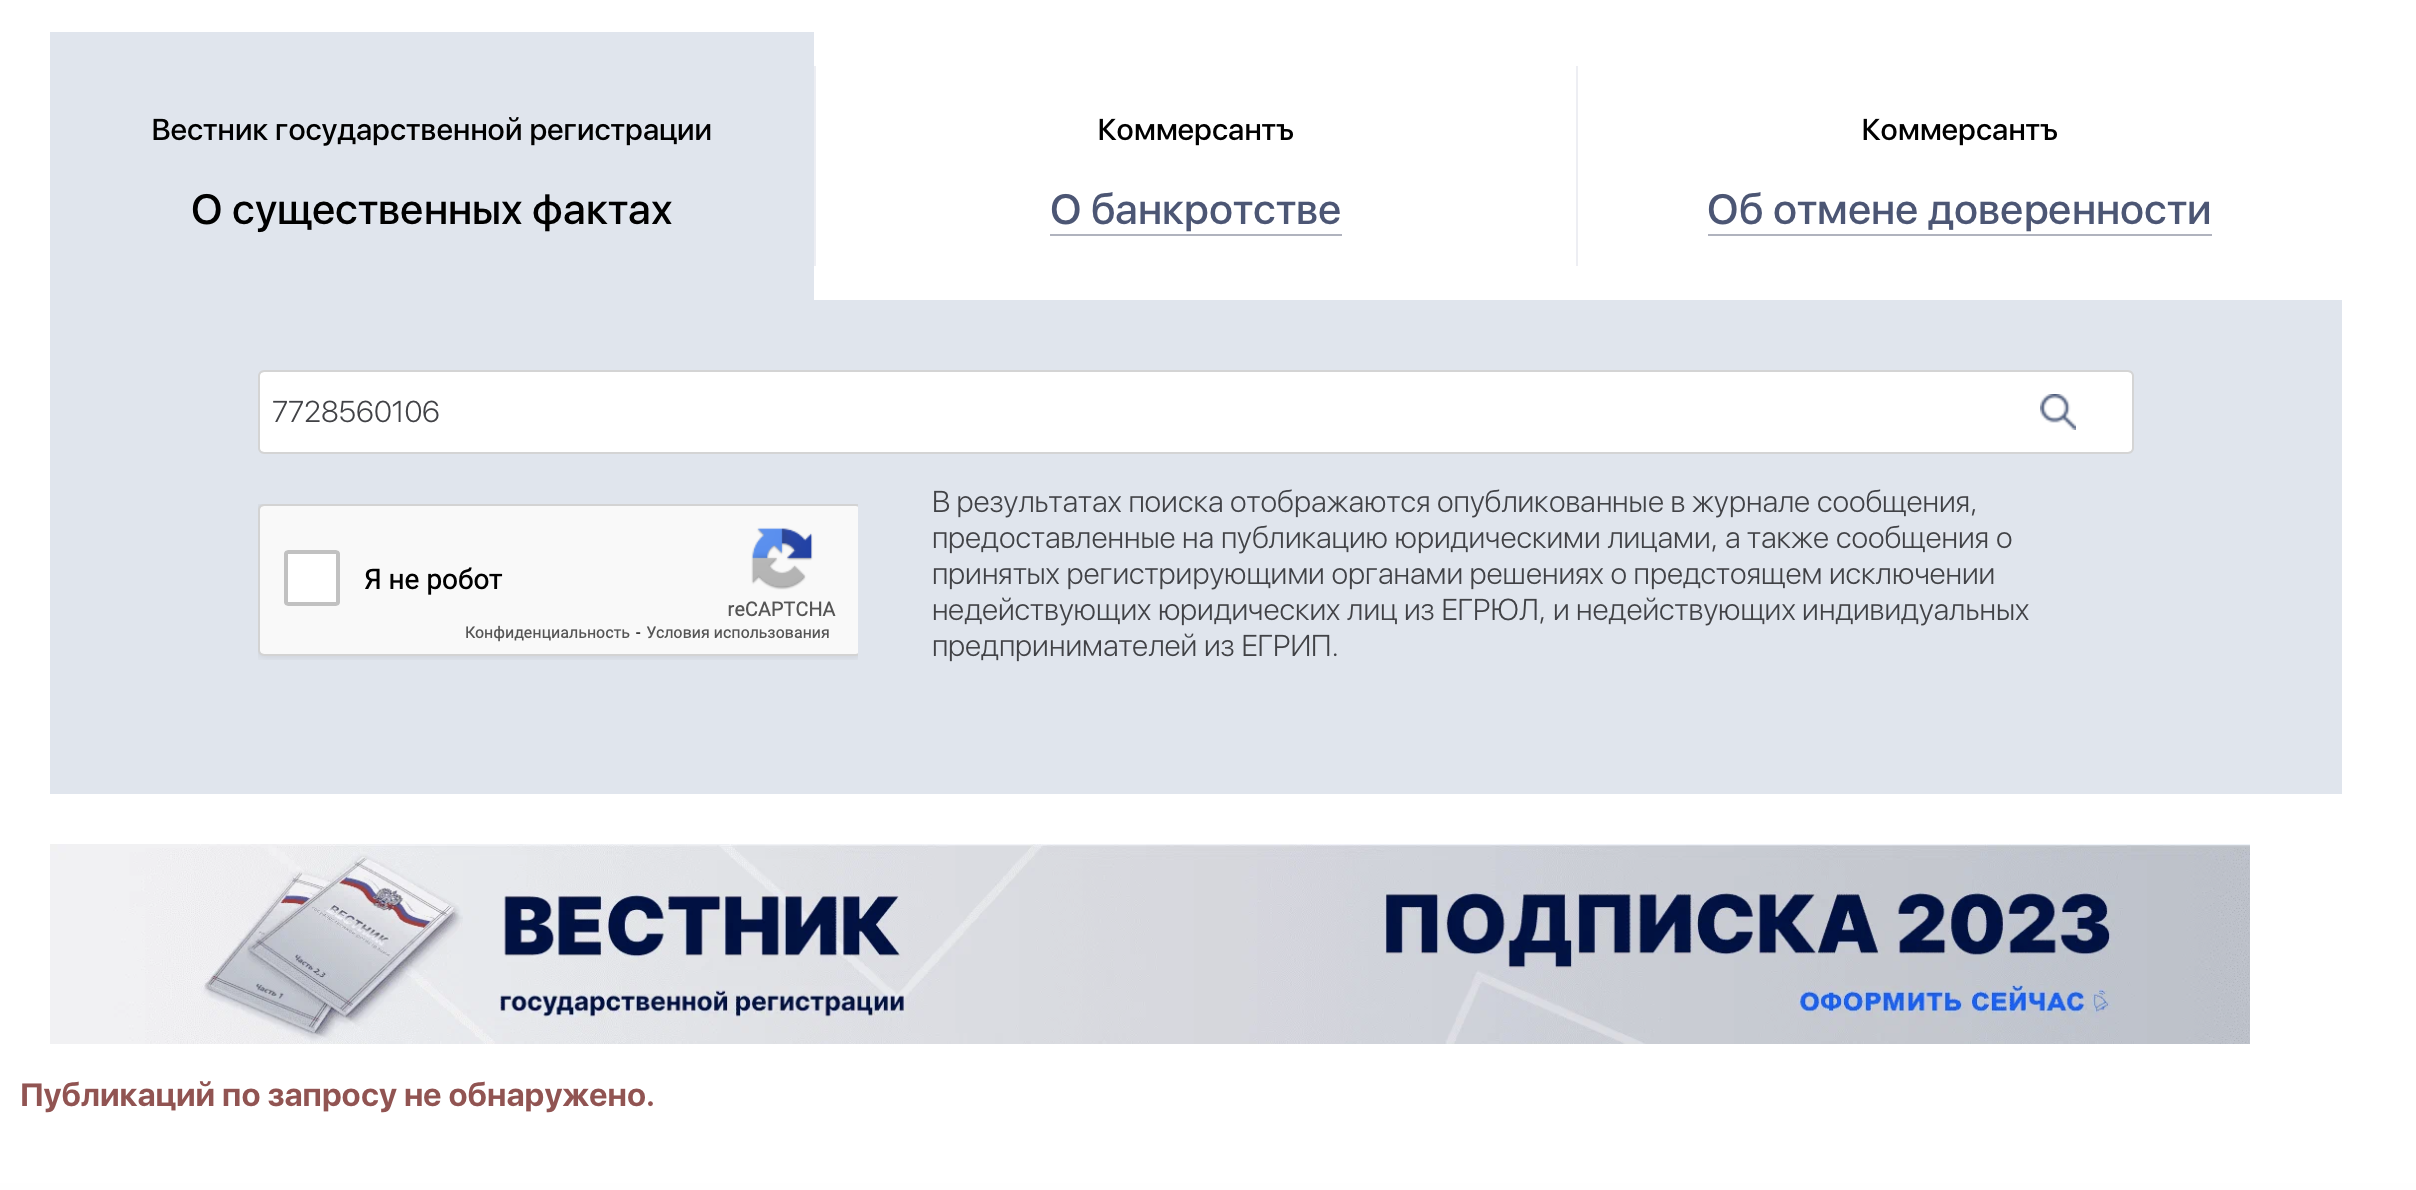 «Интерпайп-М» Пинчука продолжает работать в России